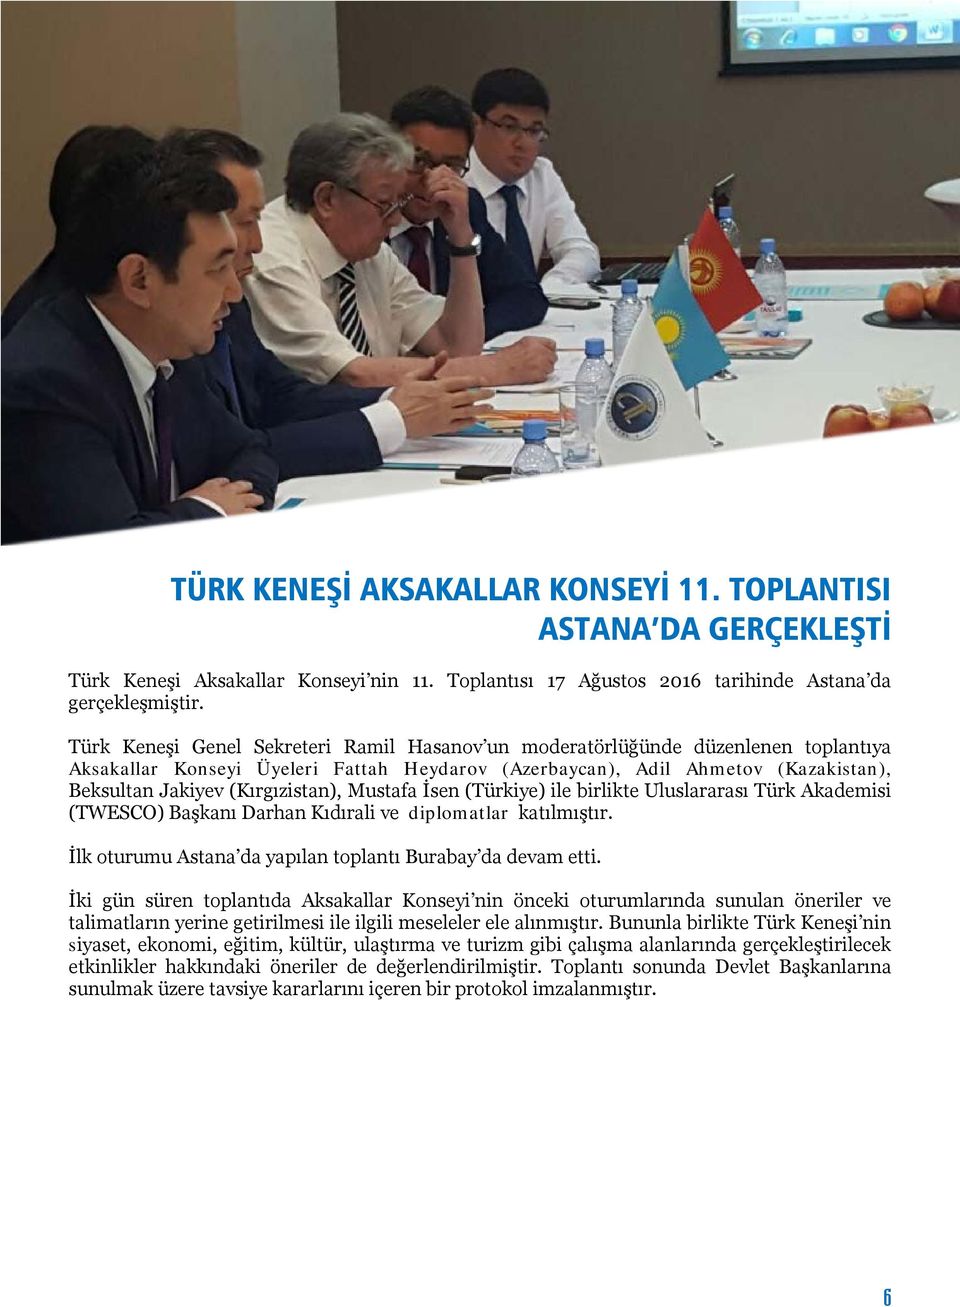 (Kırgızistan), Mustafa İsen (Türkiye) ile birlikte Uluslararası Türk Akademisi (TWESCO) Başkanı Darhan Kıdırali ve diplomatlar katılmıştır.